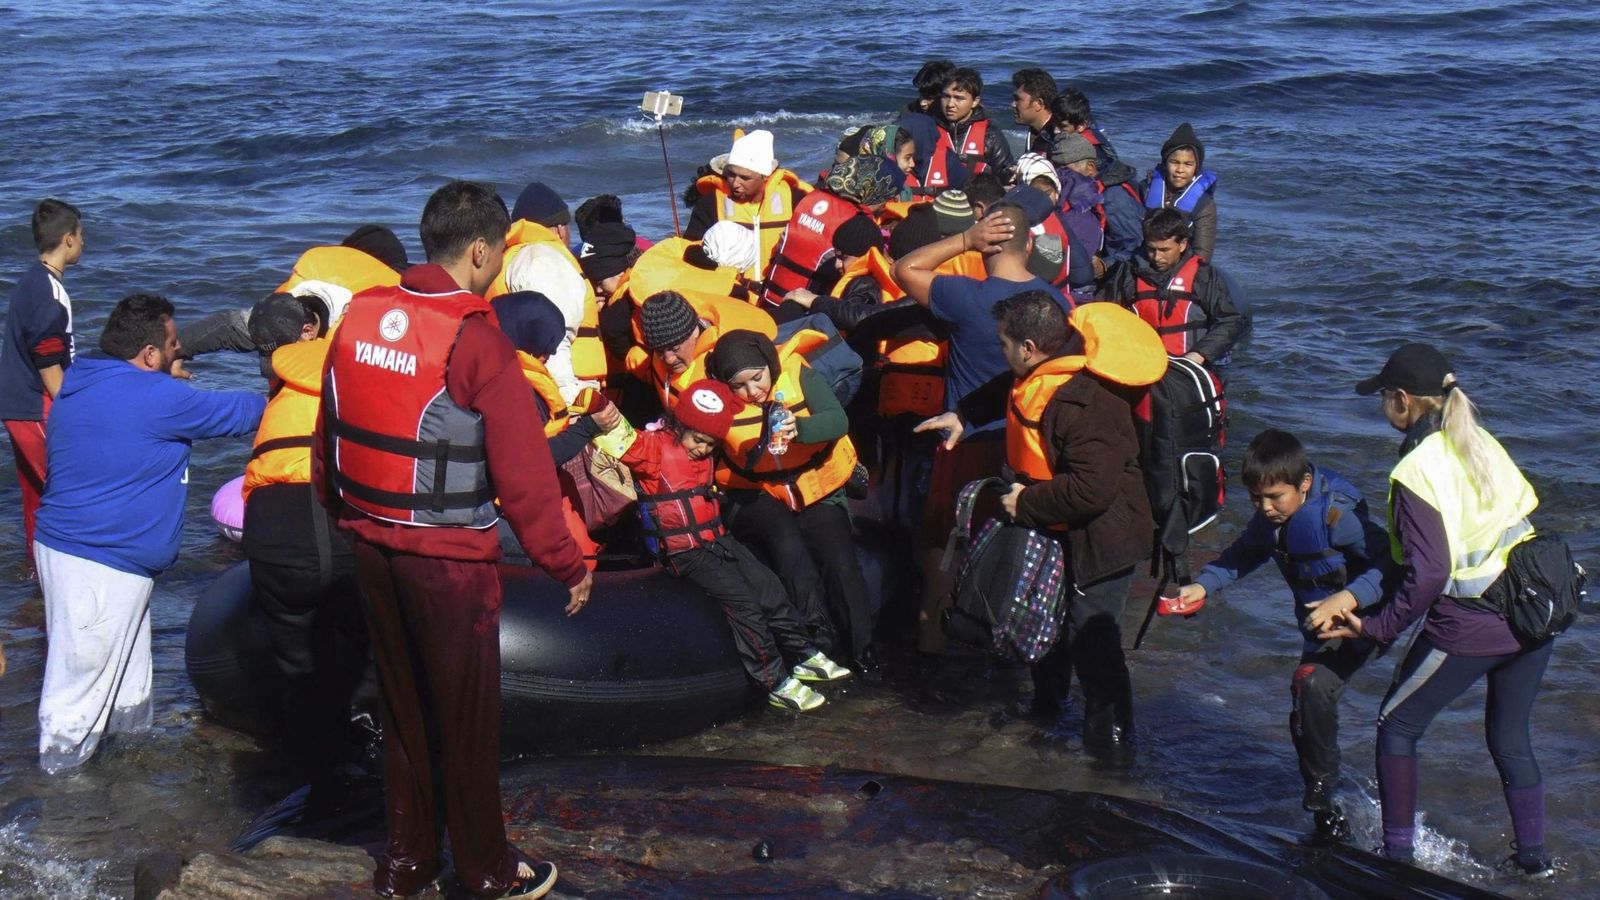 Foto: Vista de la llegada de refugiados en pateras a las costas de la isla de Lesbos, Grecia. (Efe)